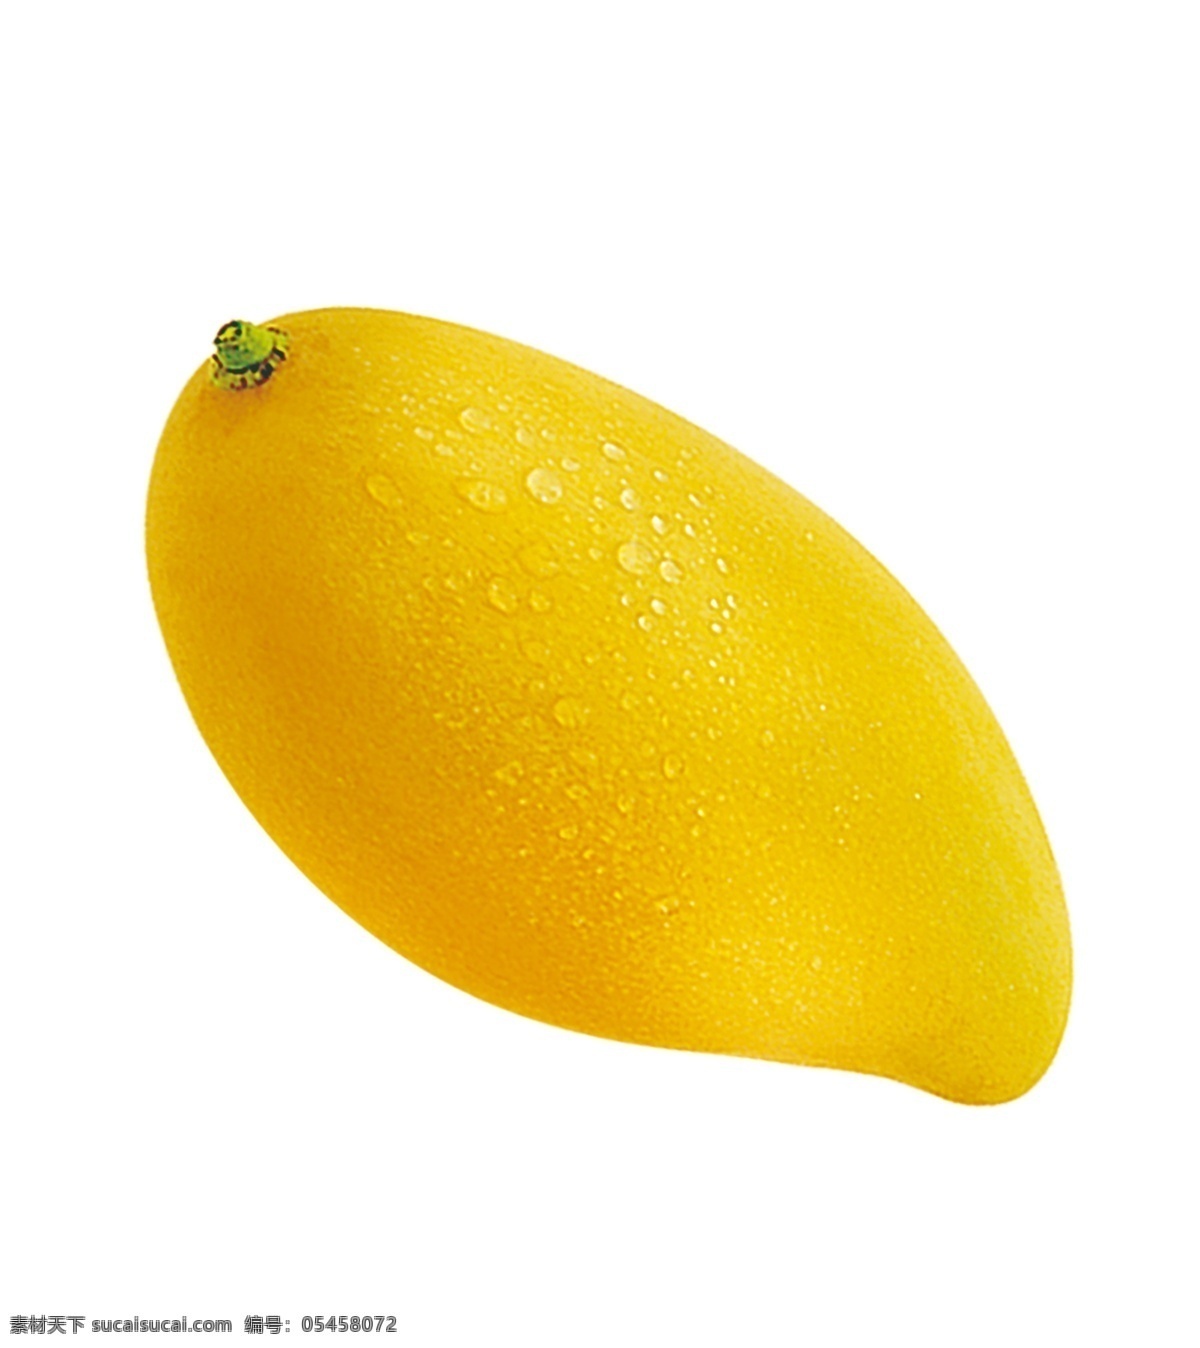 芒果图片 芒果 芒果干 水果 黄色芒果 成熟的芒果 素材图